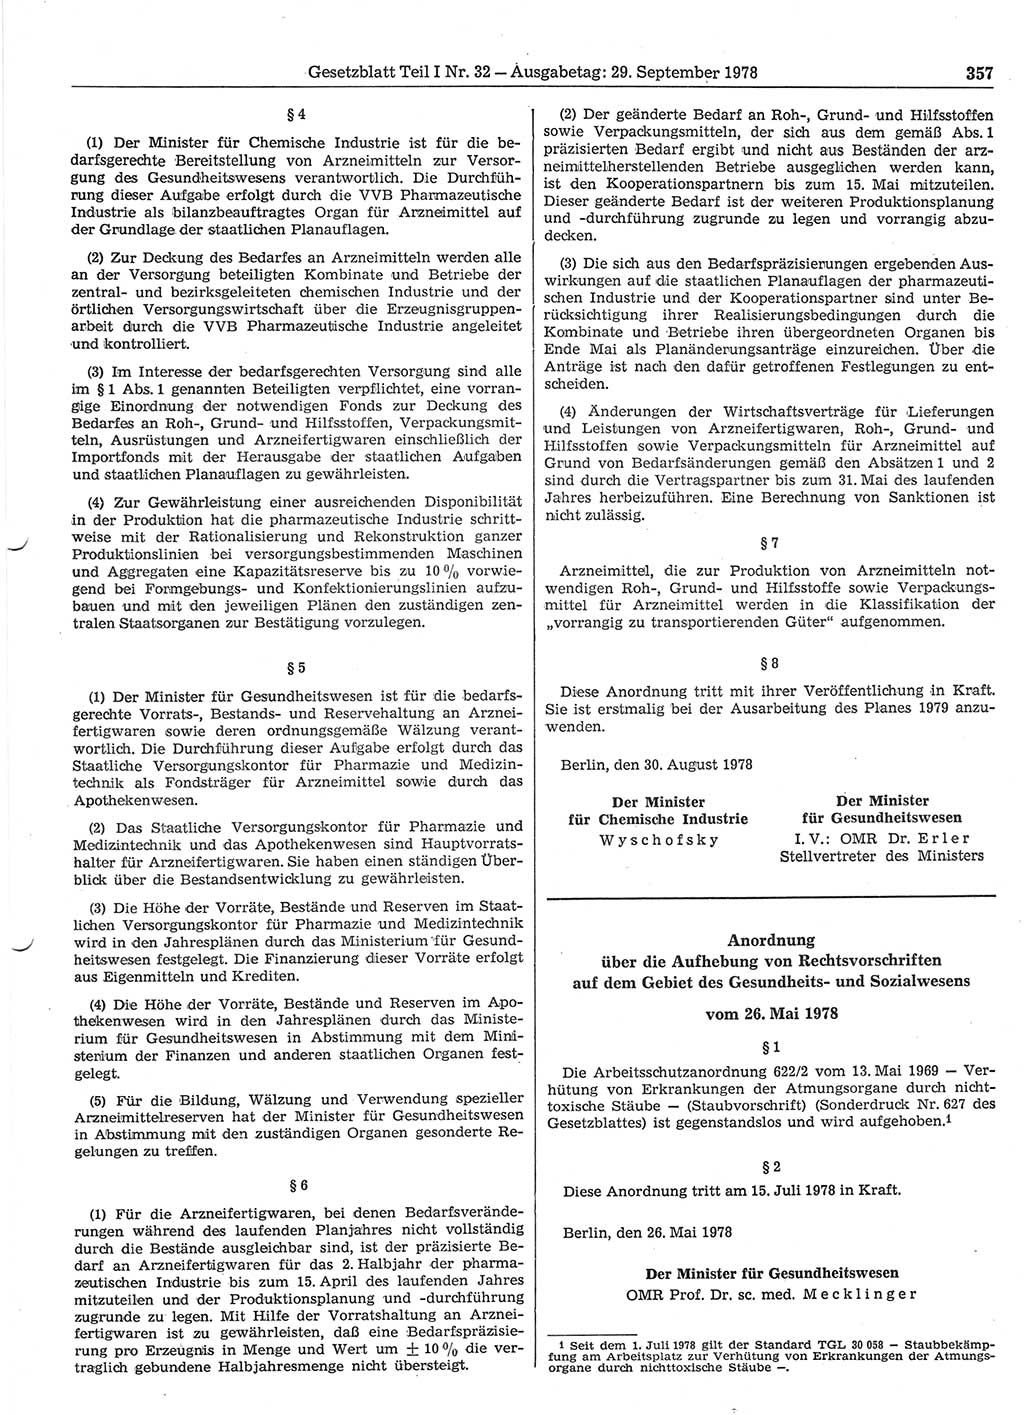 Gesetzblatt (GBl.) der Deutschen Demokratischen Republik (DDR) Teil Ⅰ 1978, Seite 357 (GBl. DDR Ⅰ 1978, S. 357)